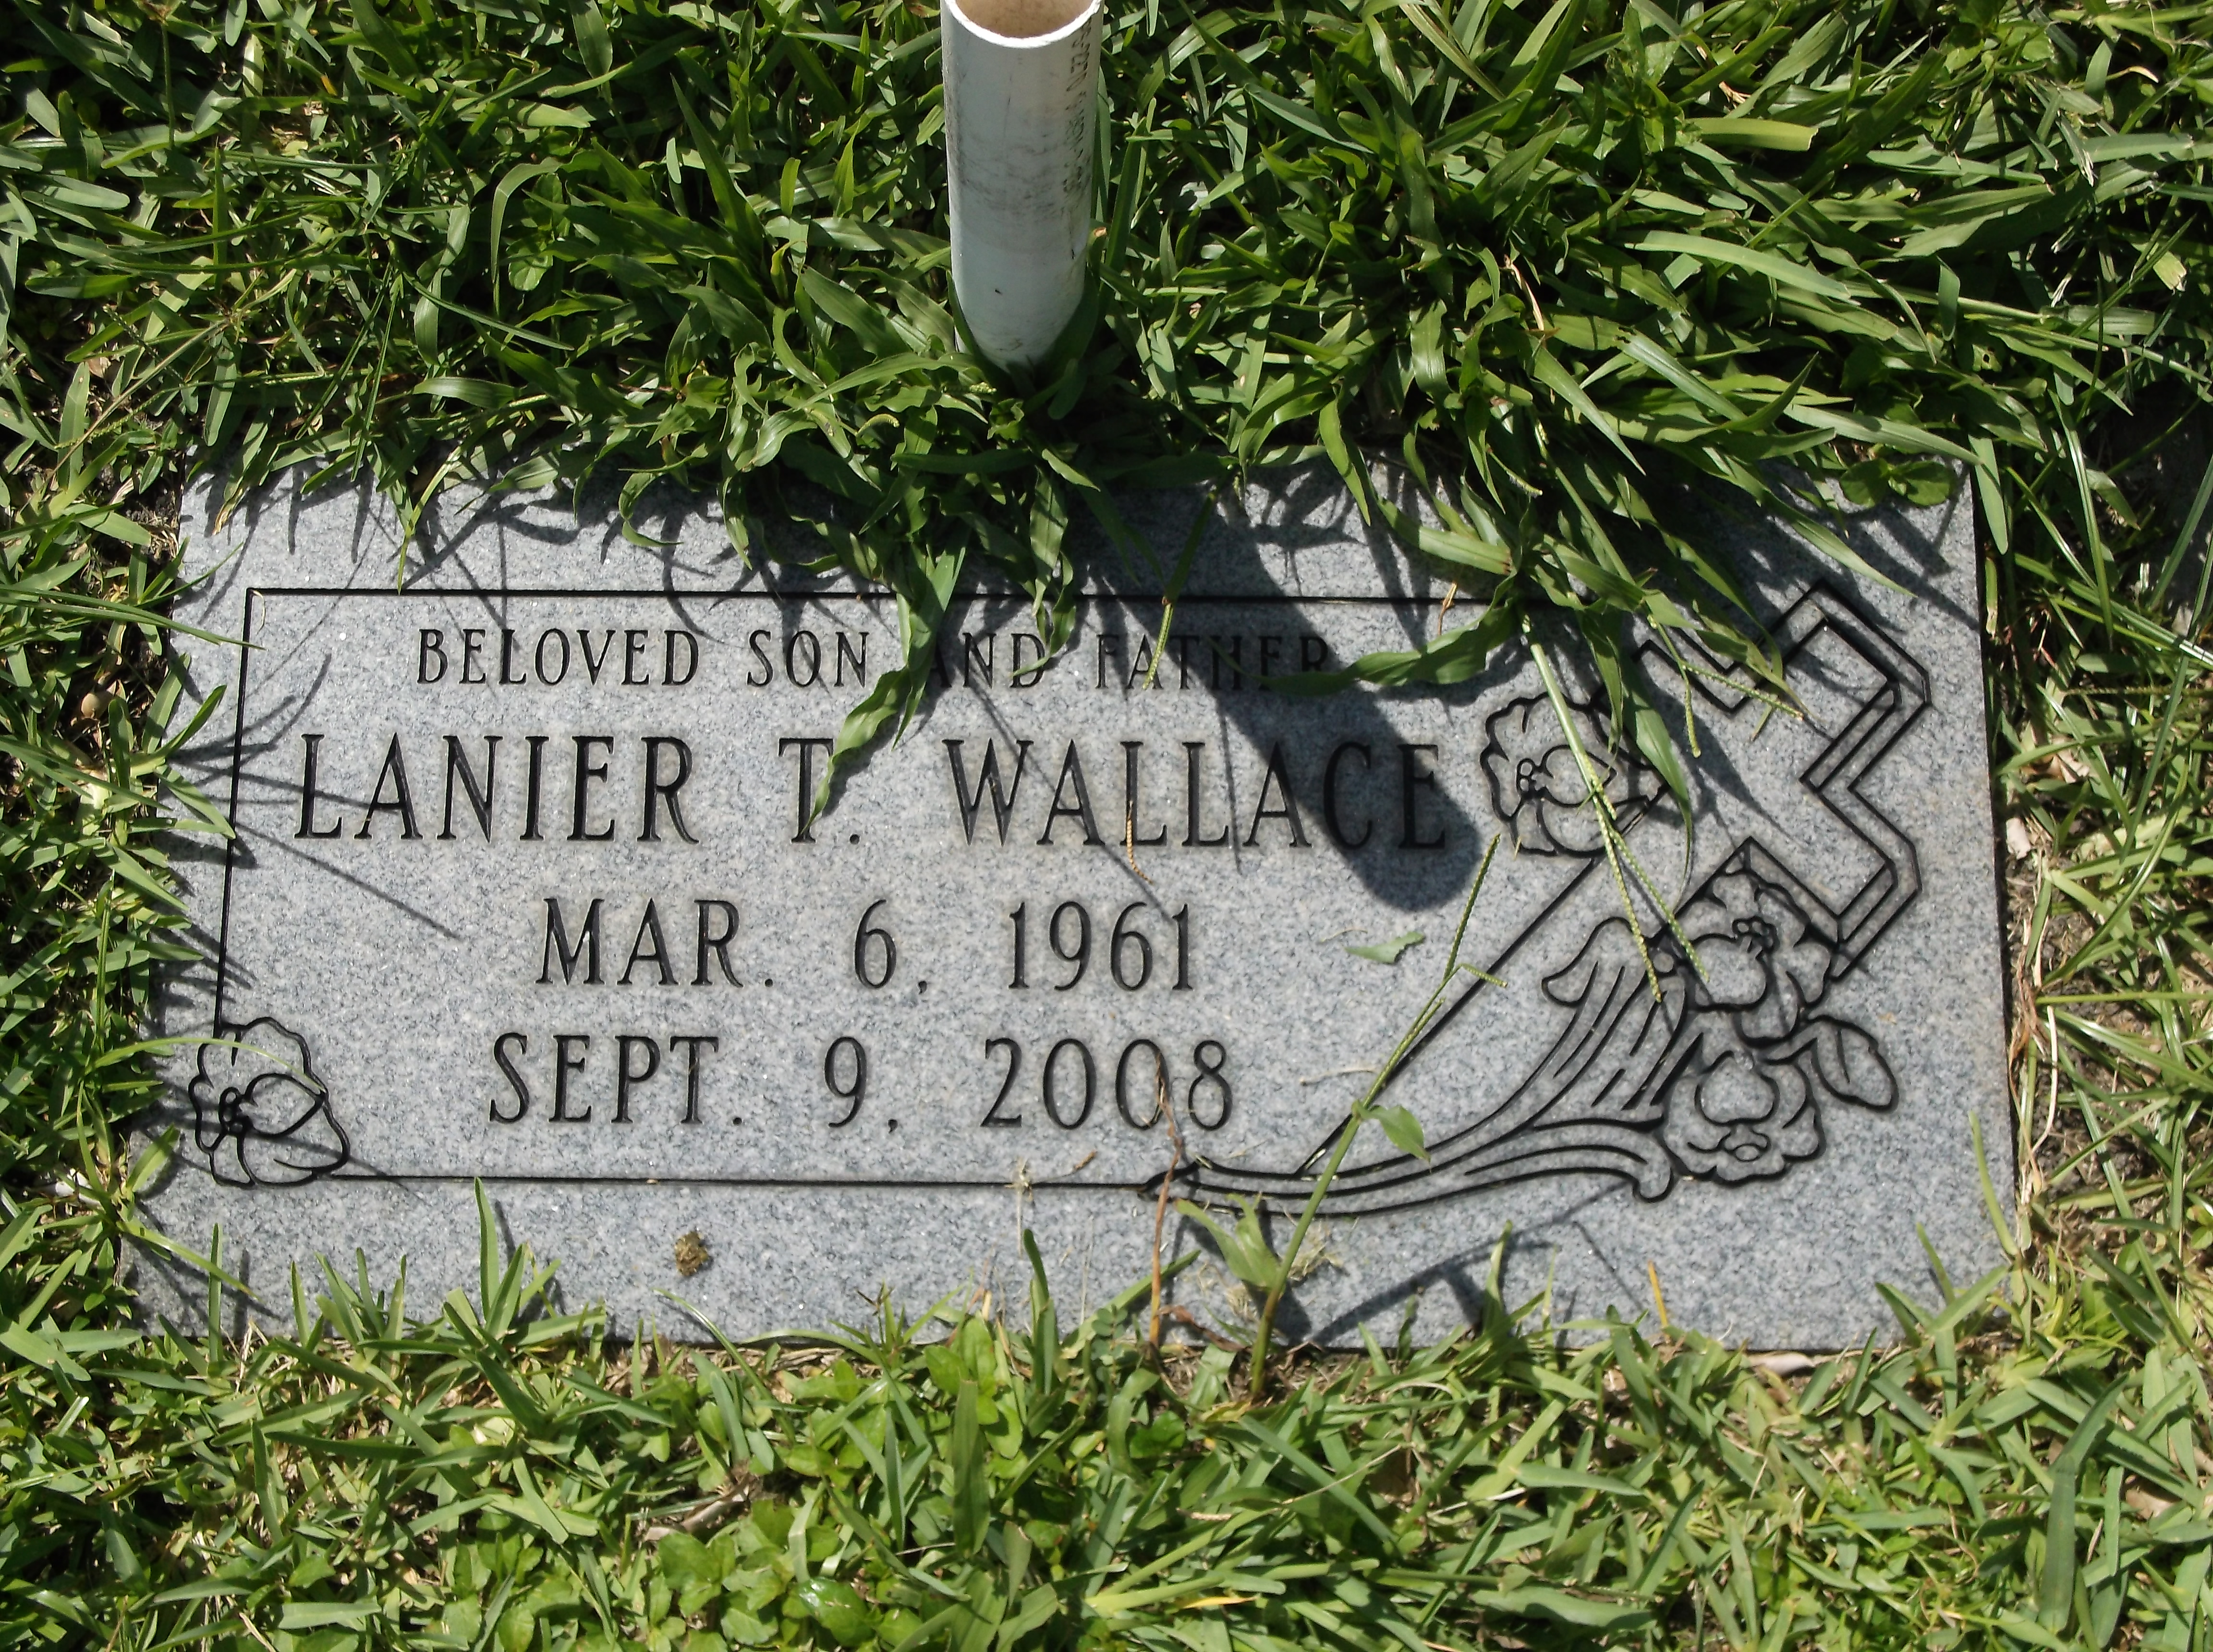 Lanier T Wallace